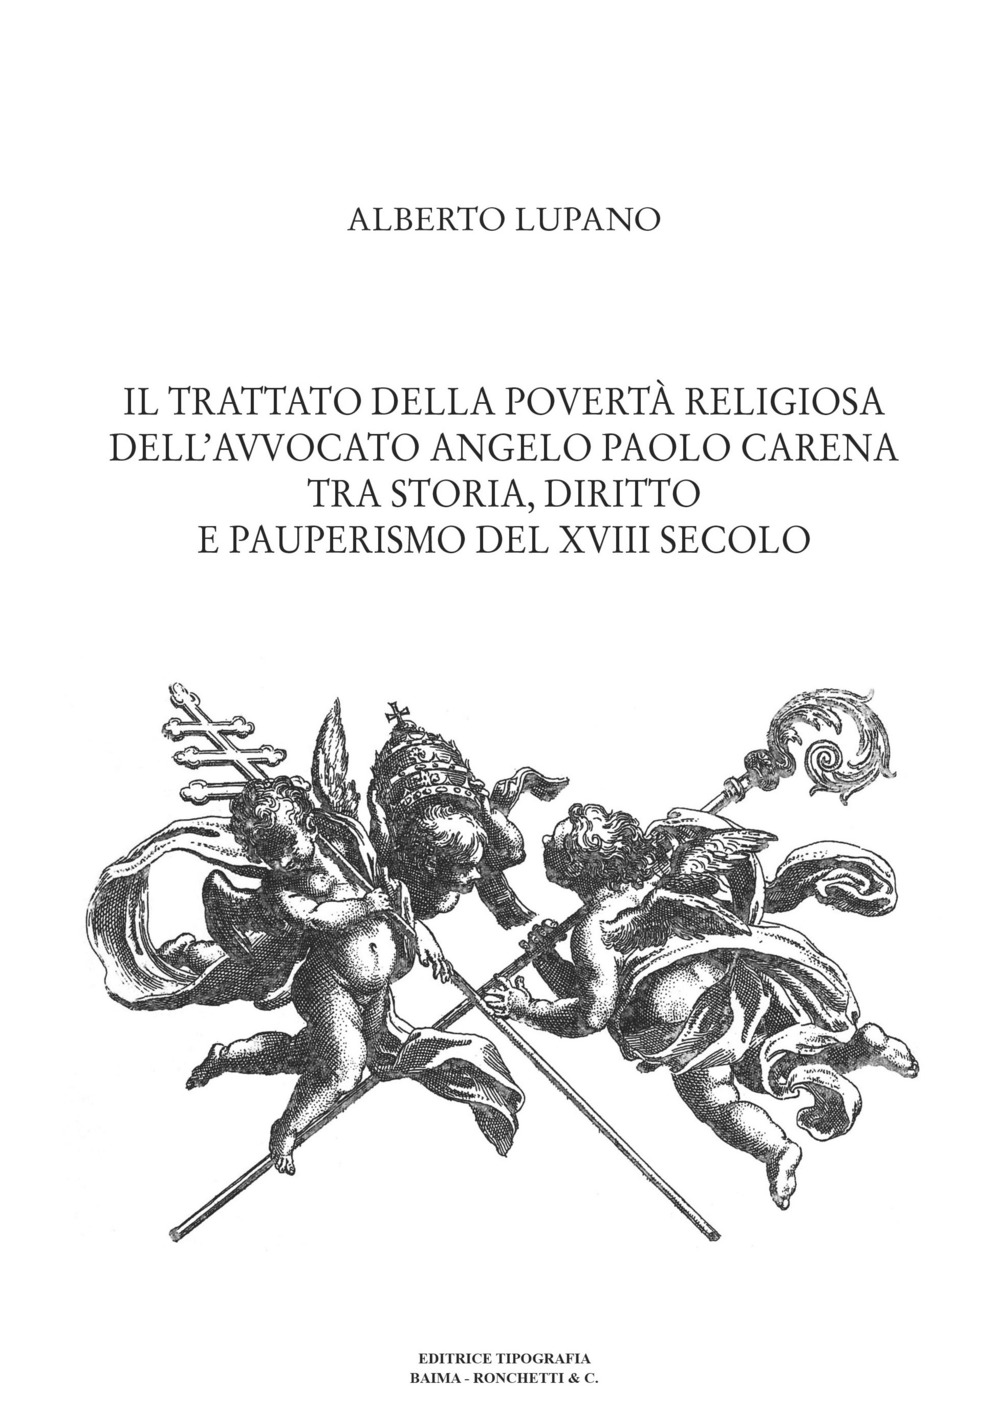 Il trattato della povertà religiosa dell'avvocato Angelo Paolo Carena. Tra storia, diritto e pauperismo del XVIII secolo